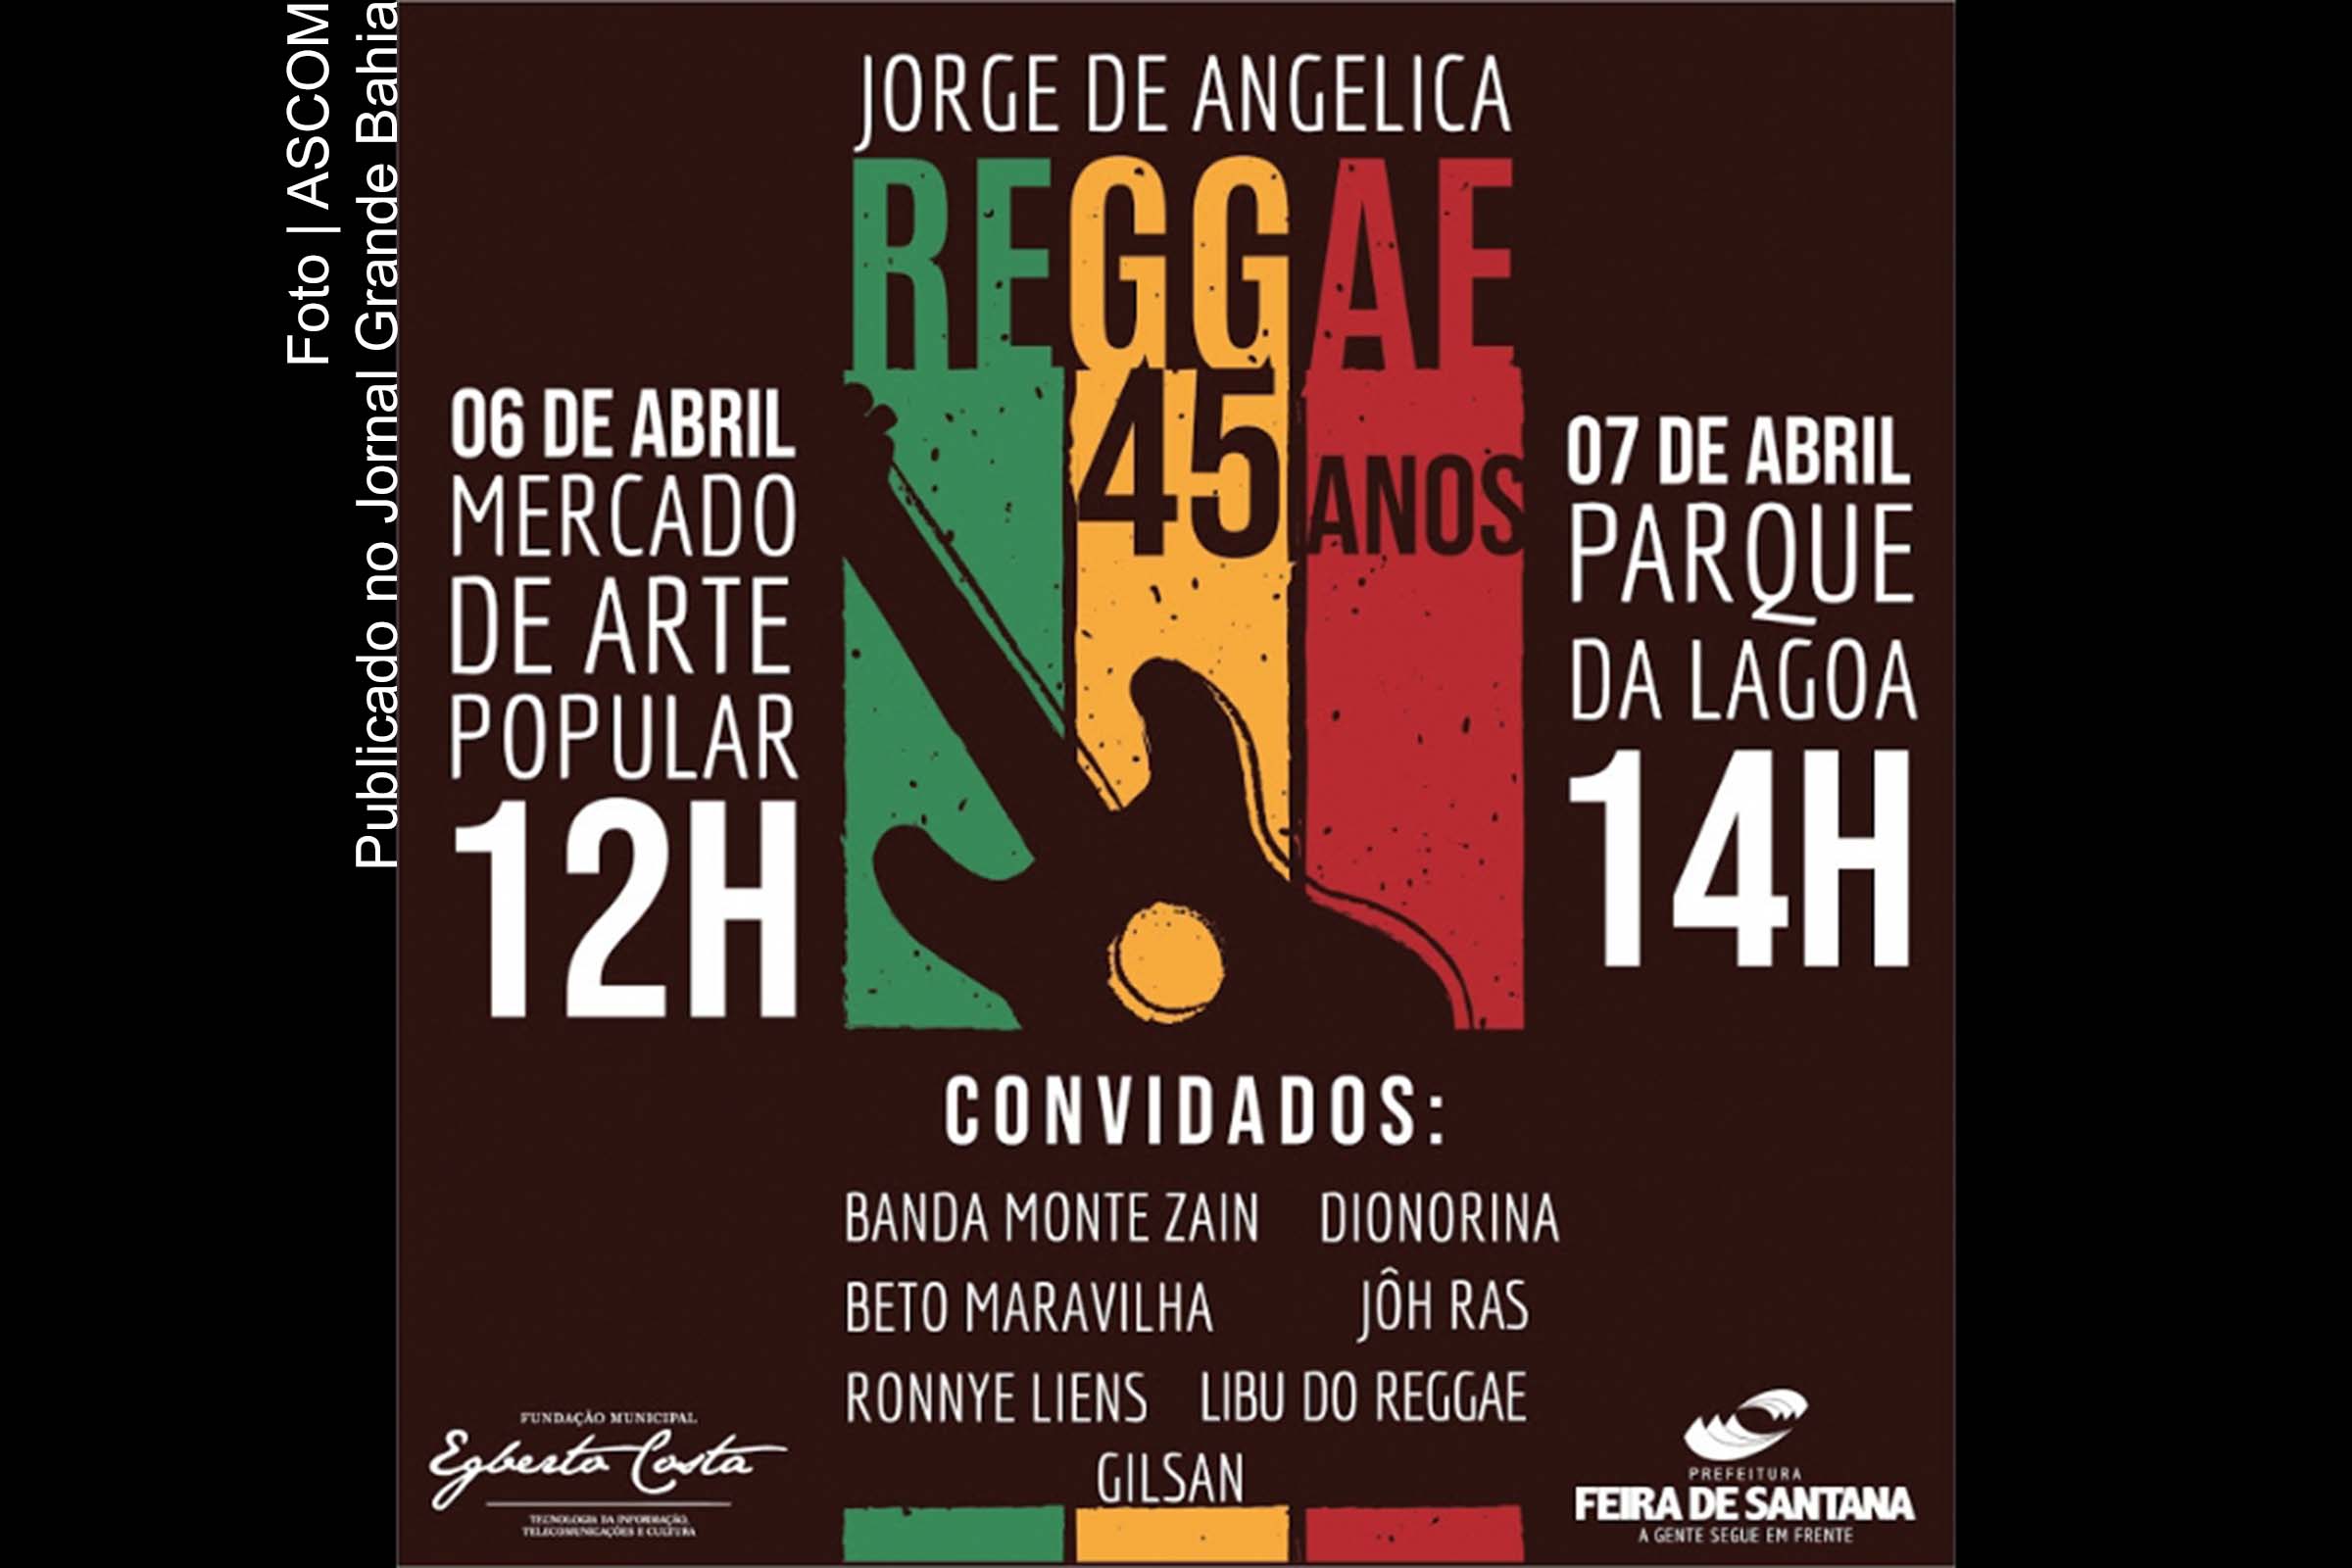 Cartaz anuncia show do Jorge de Angelica no Mercado de Arte Popular de Feira de Santana.